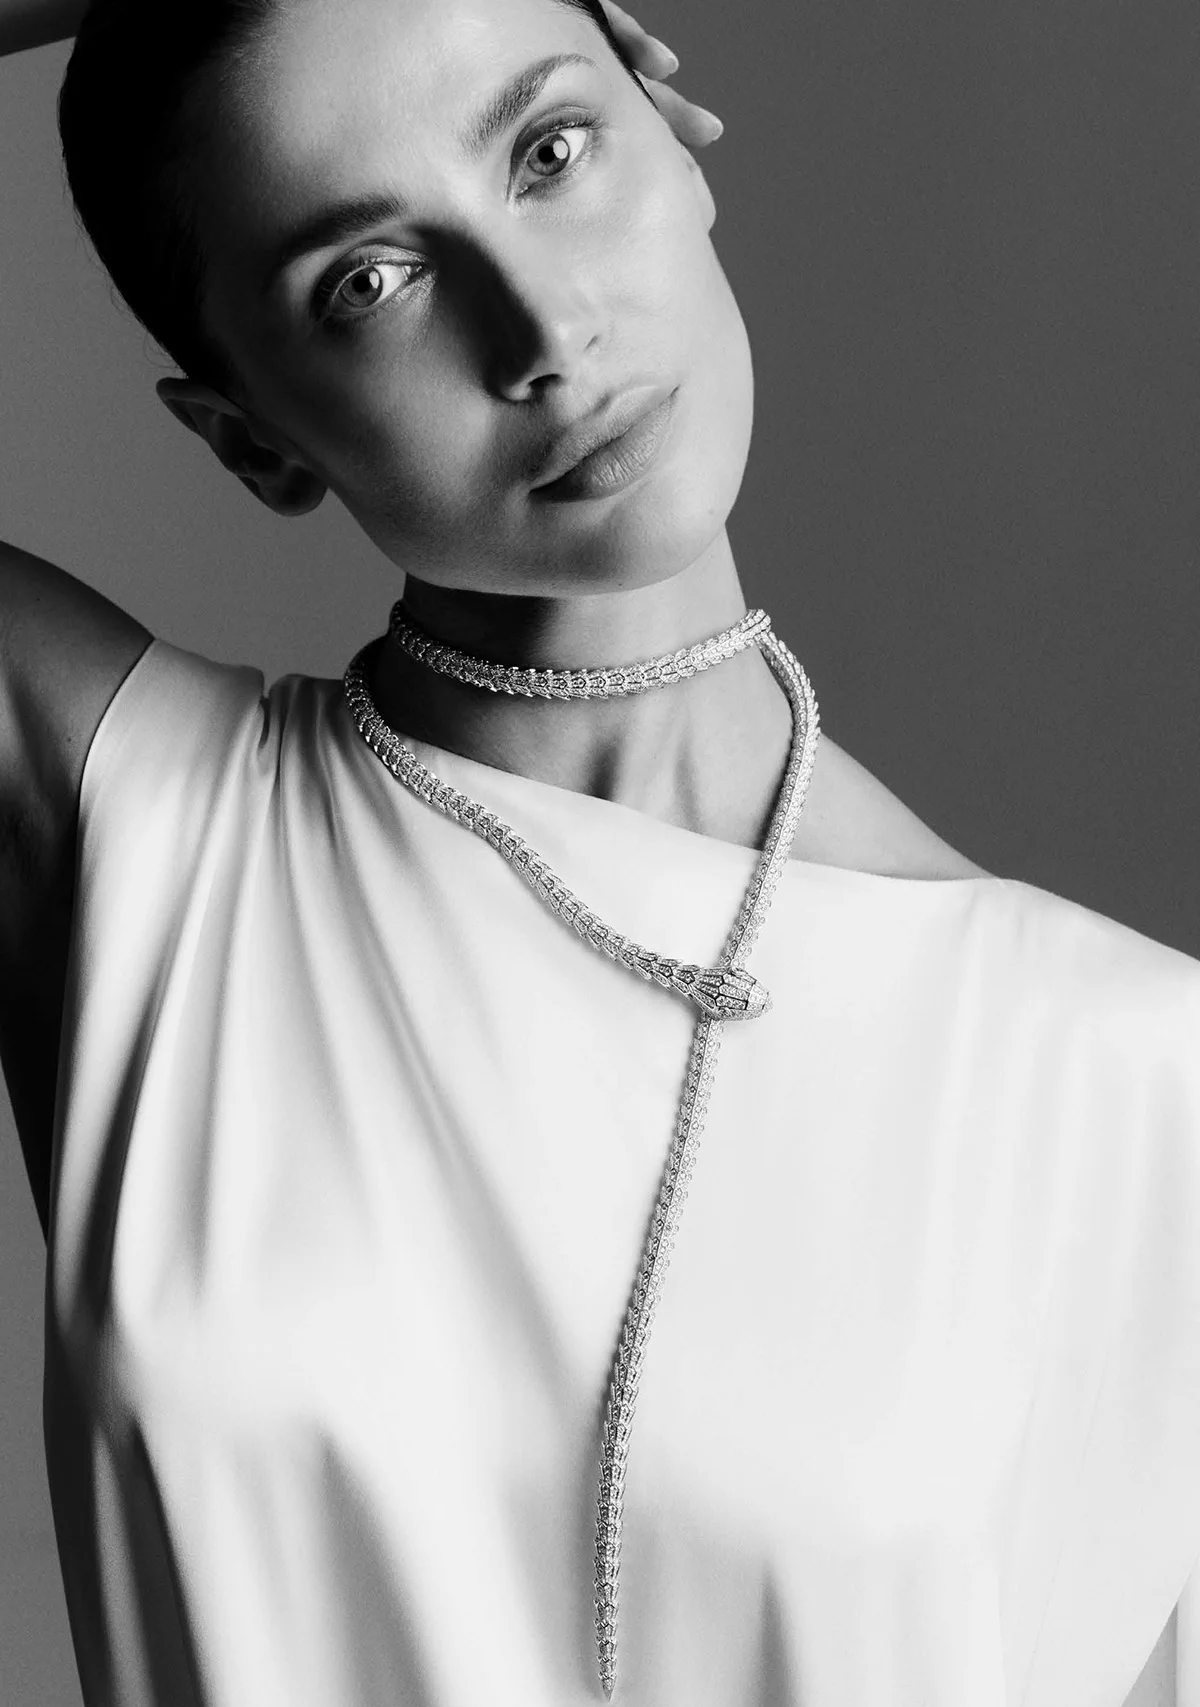 Sabina Jakubowicz covers Vogue Jewelry Mexico & Latin America May 2022 by Mateusz Stankiewicz